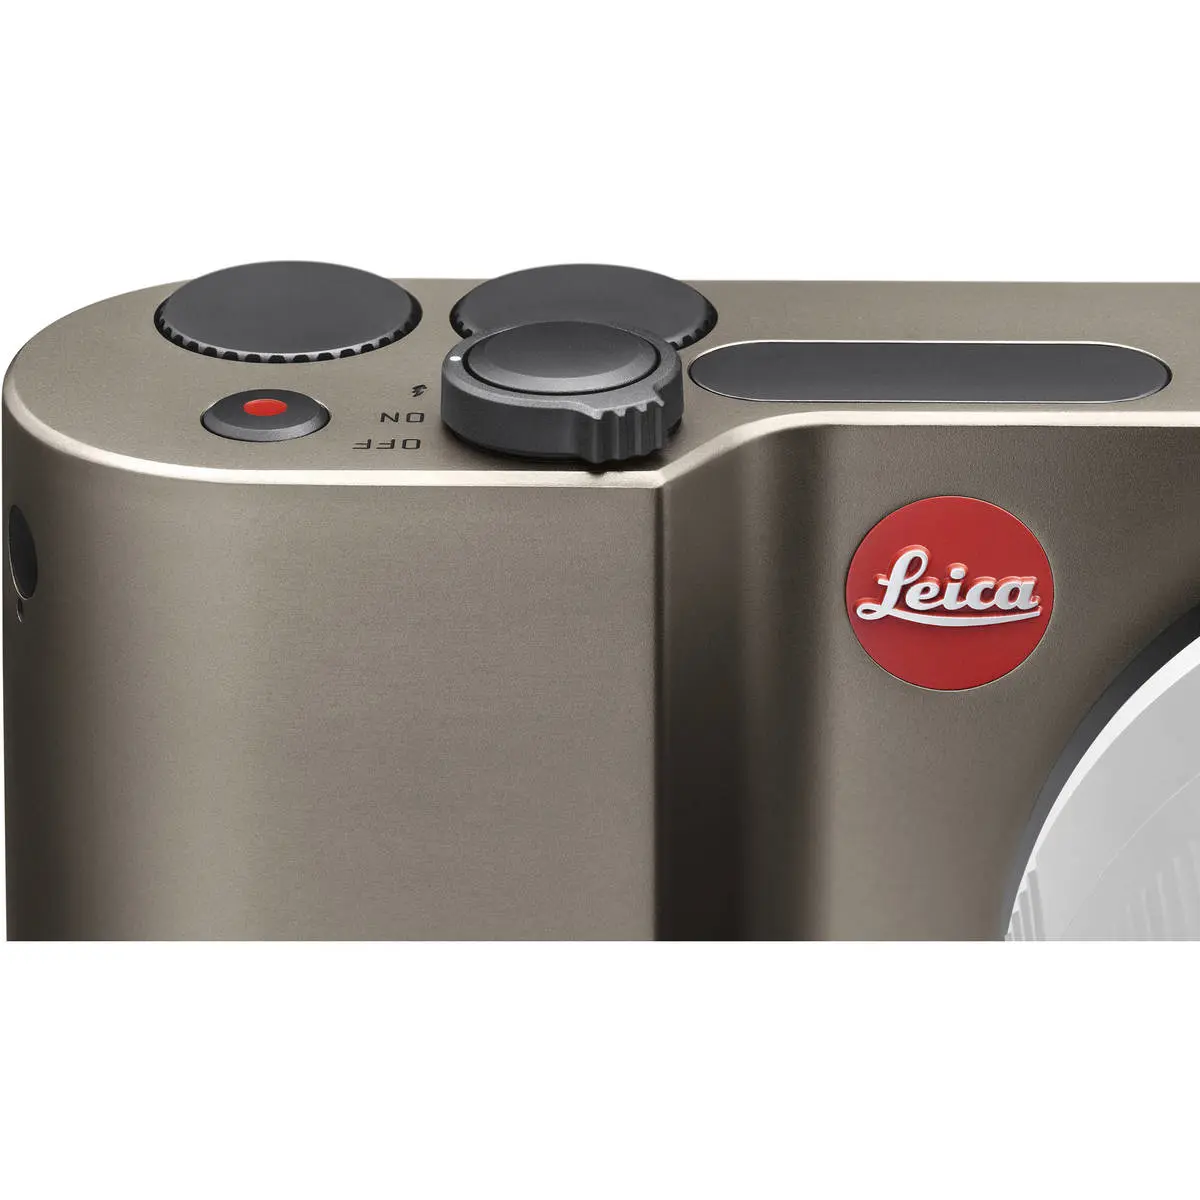 3. Leica TL Body 18112 (Titanium) Camera